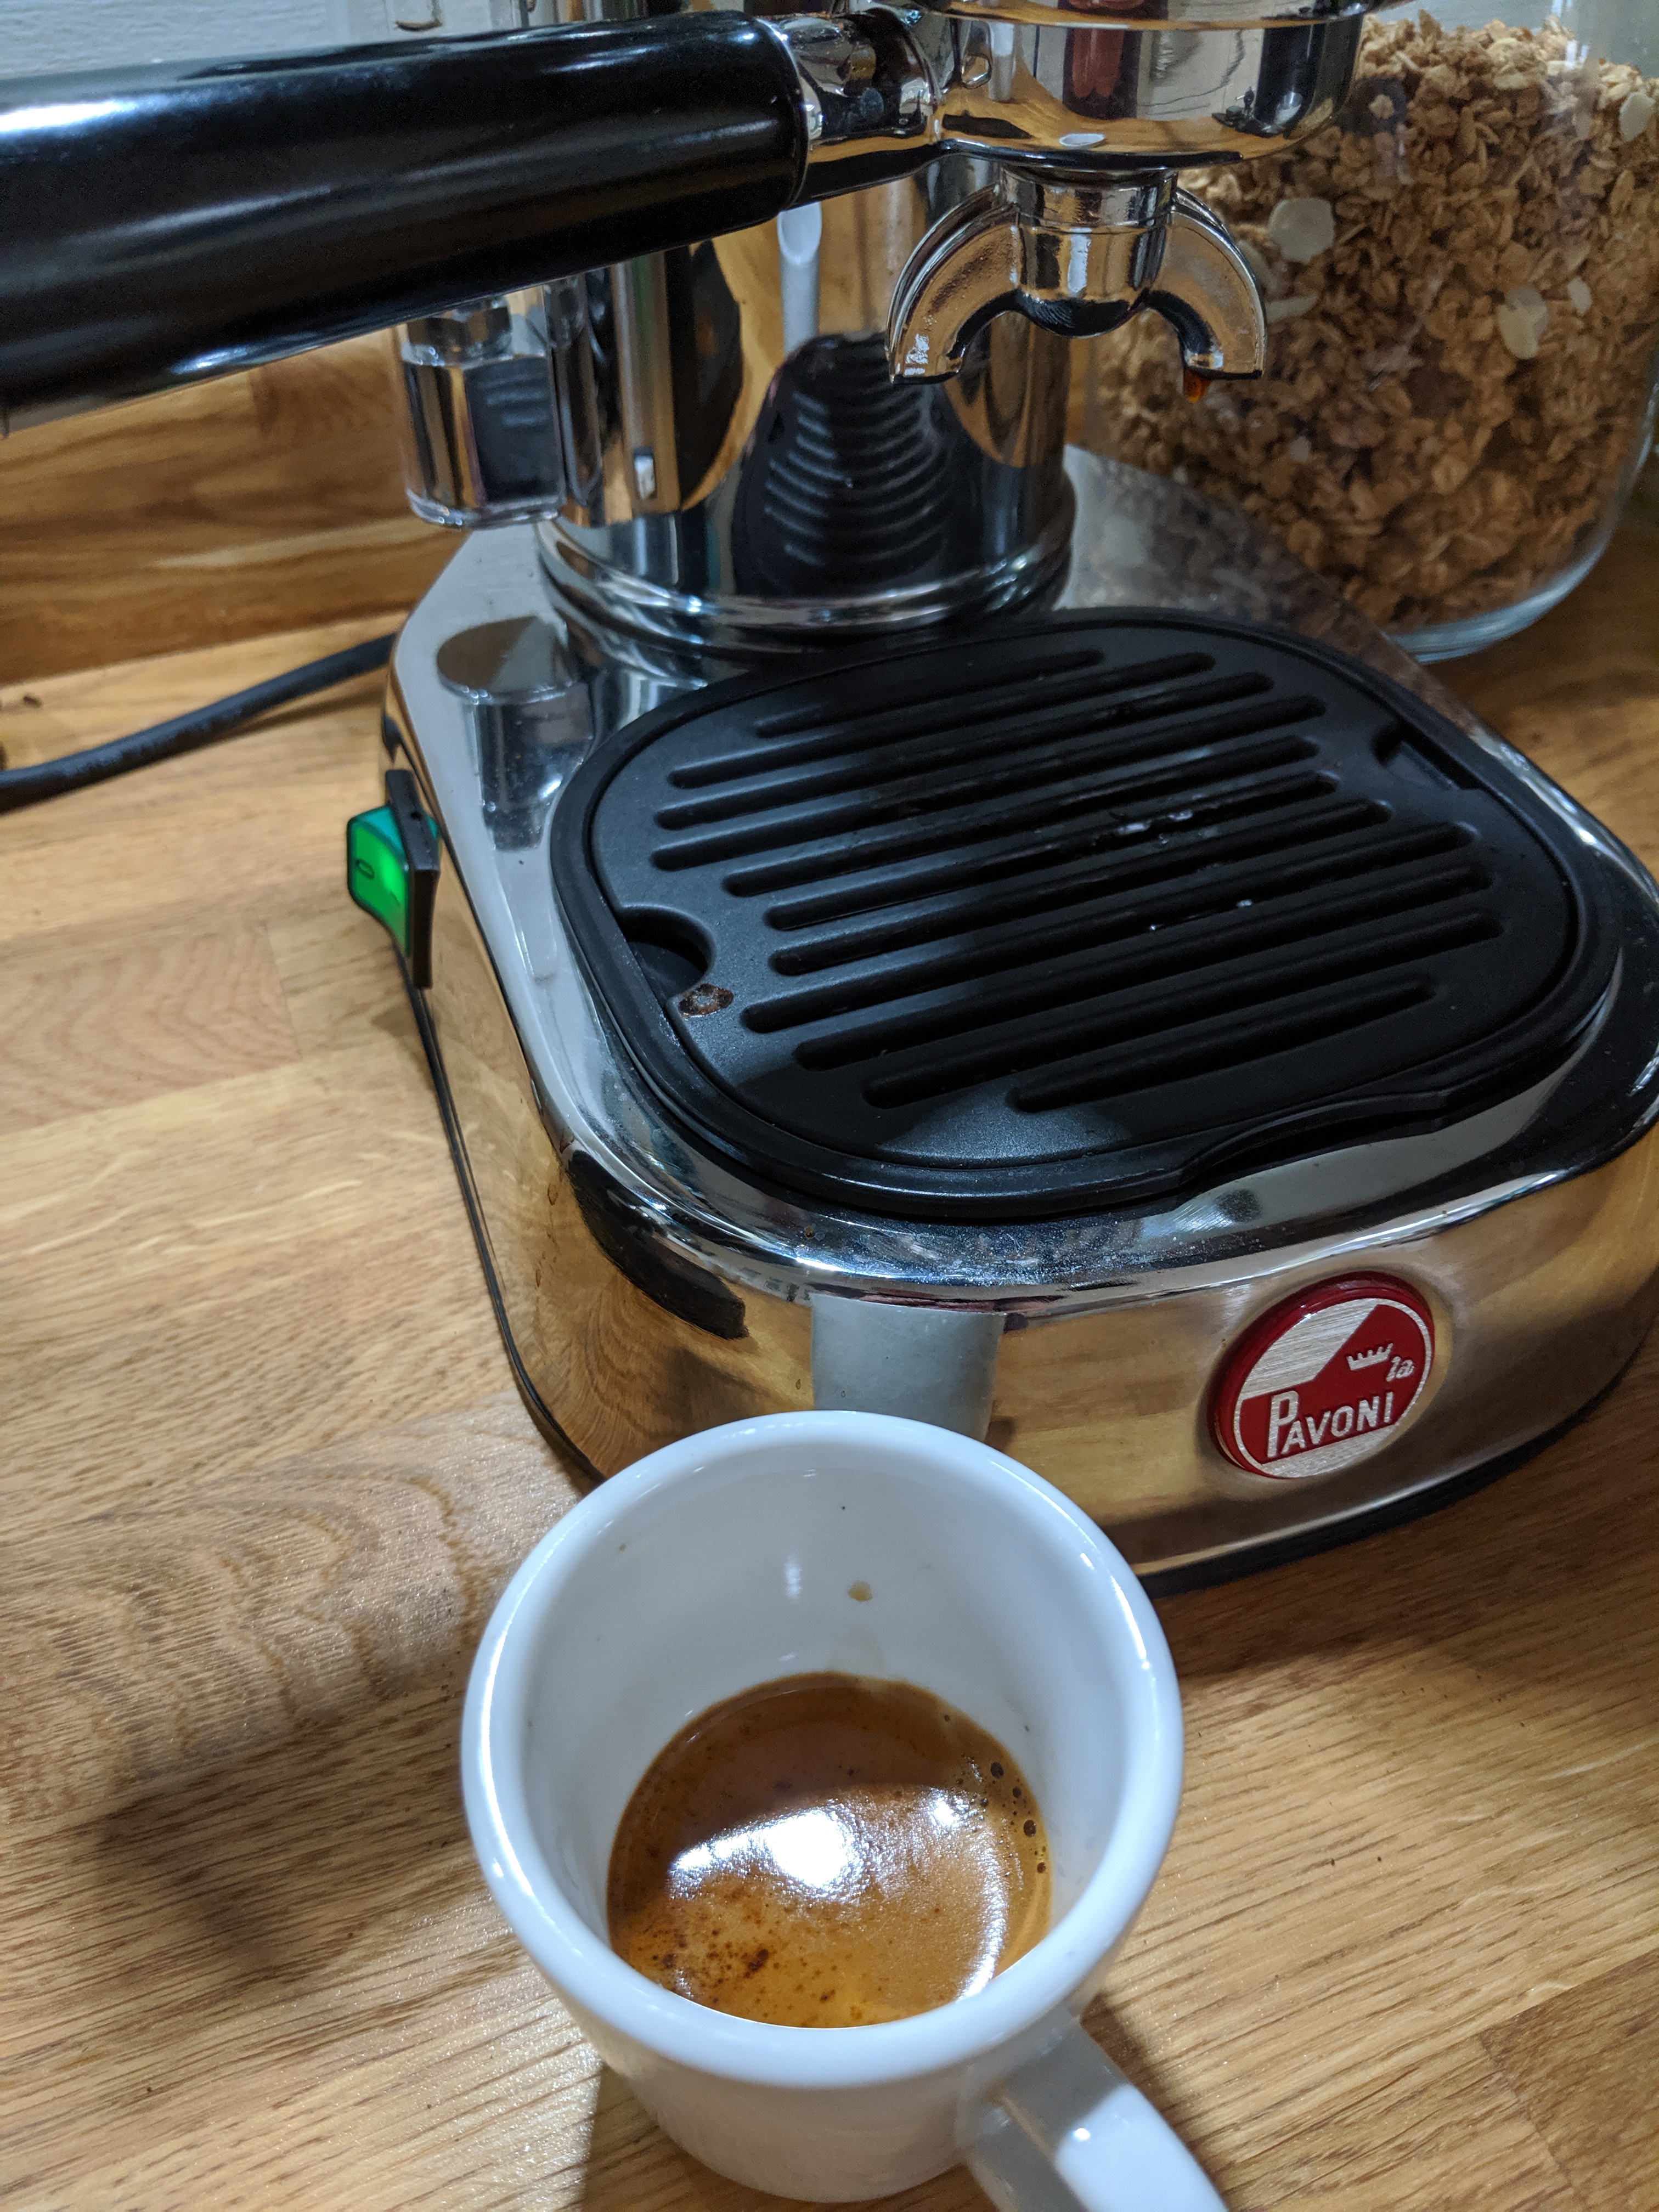 La Pavoni and espresso cup